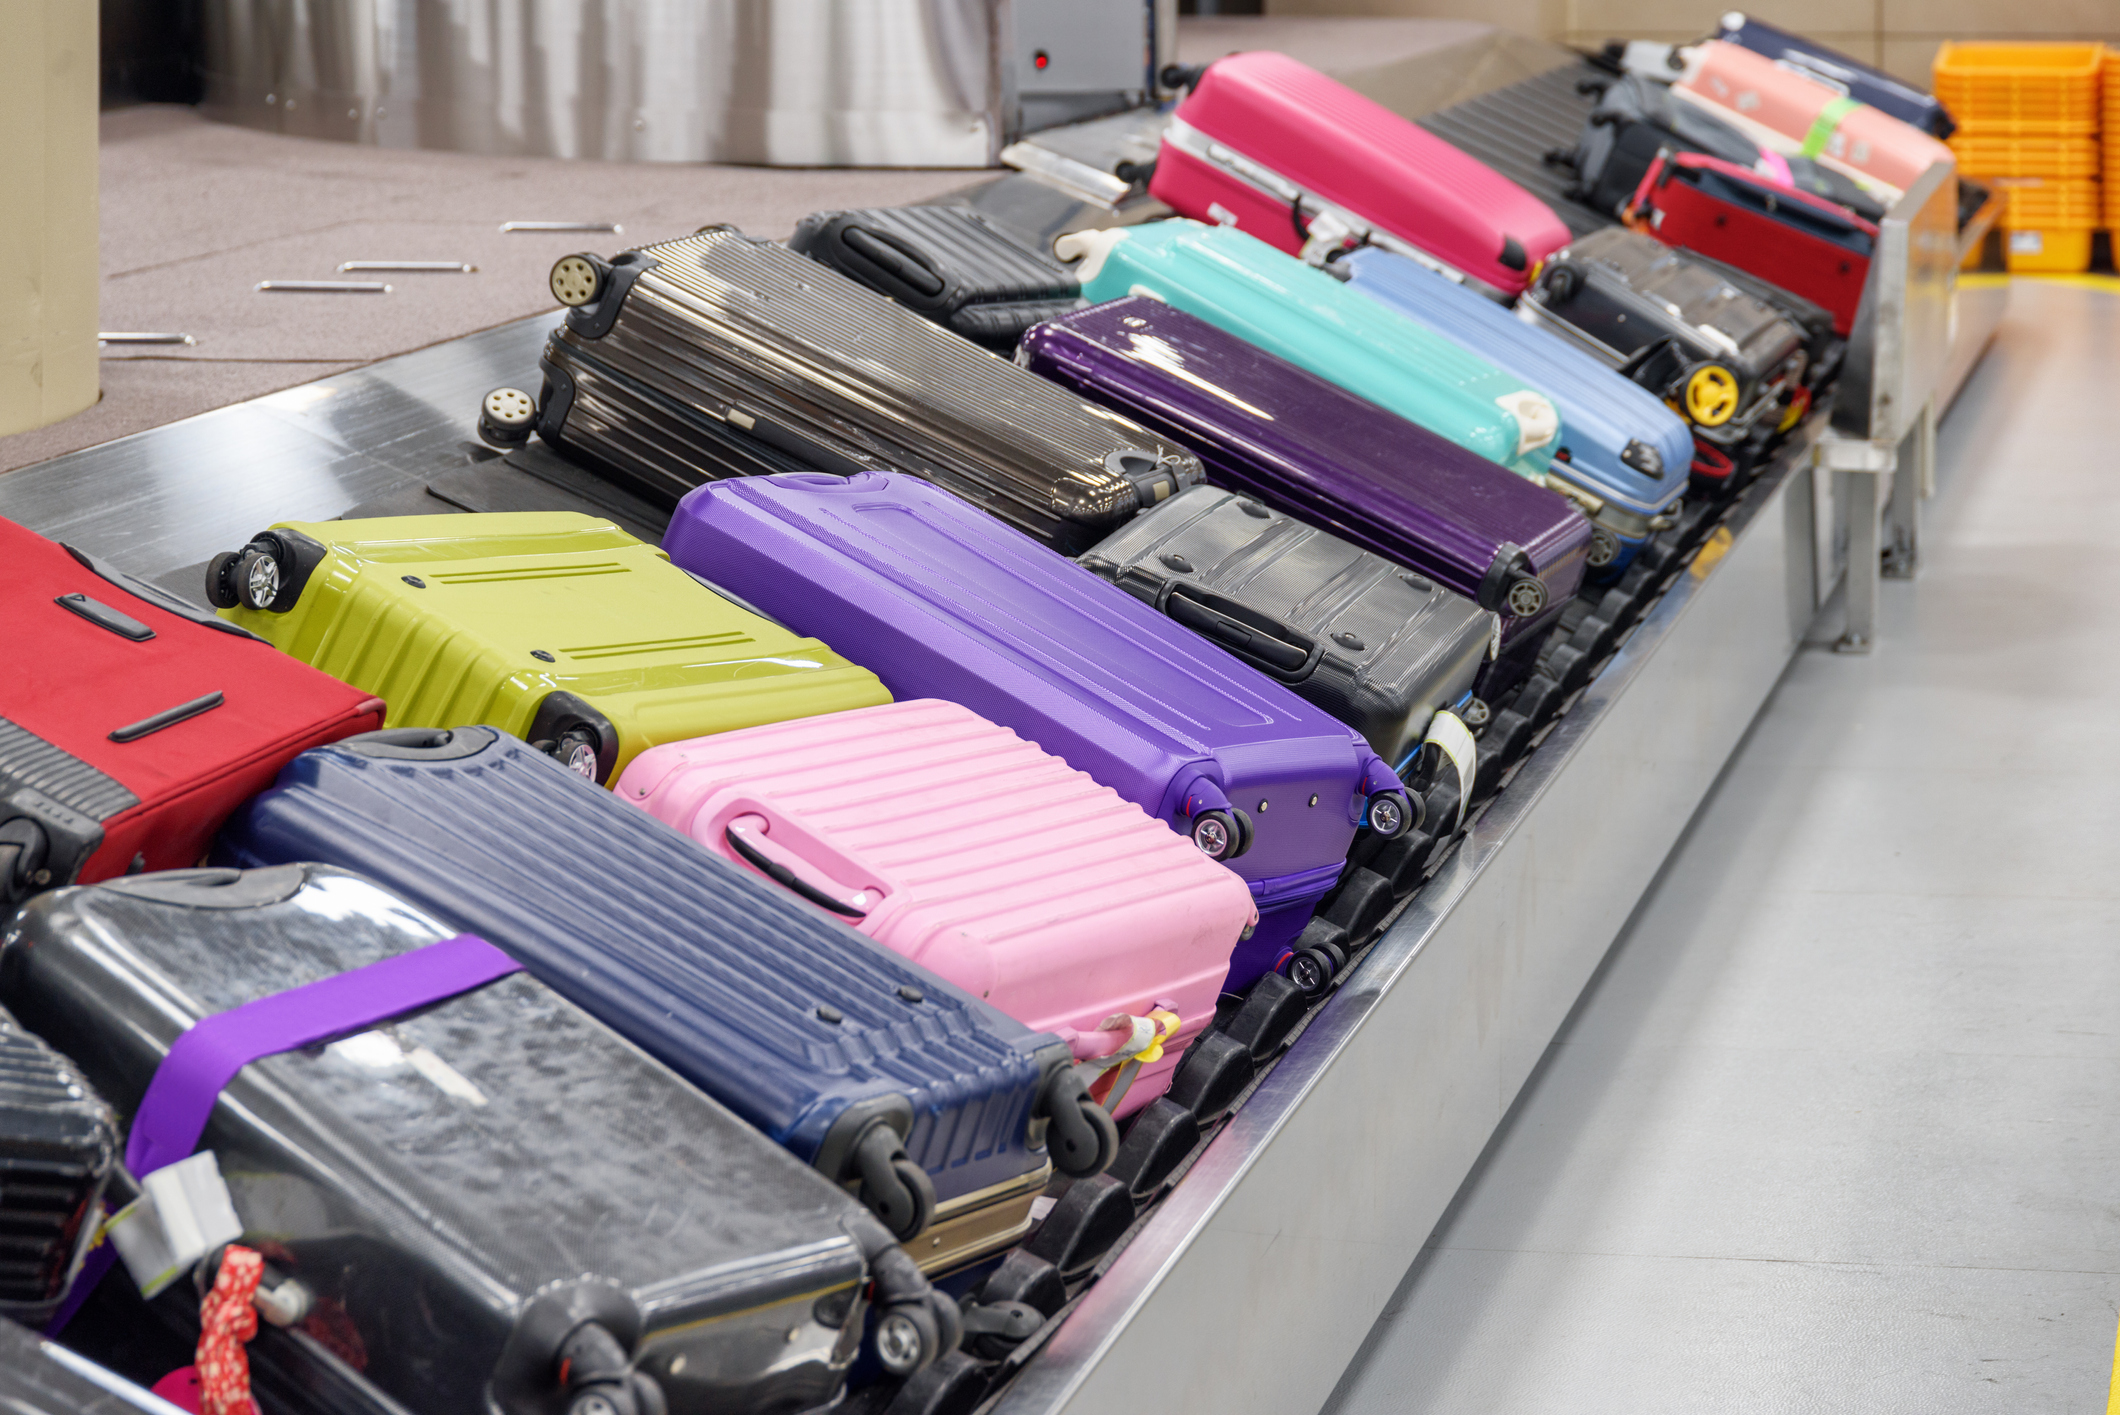 Koffers stapelen zich in grote hoeveelheid op op een bagageband.